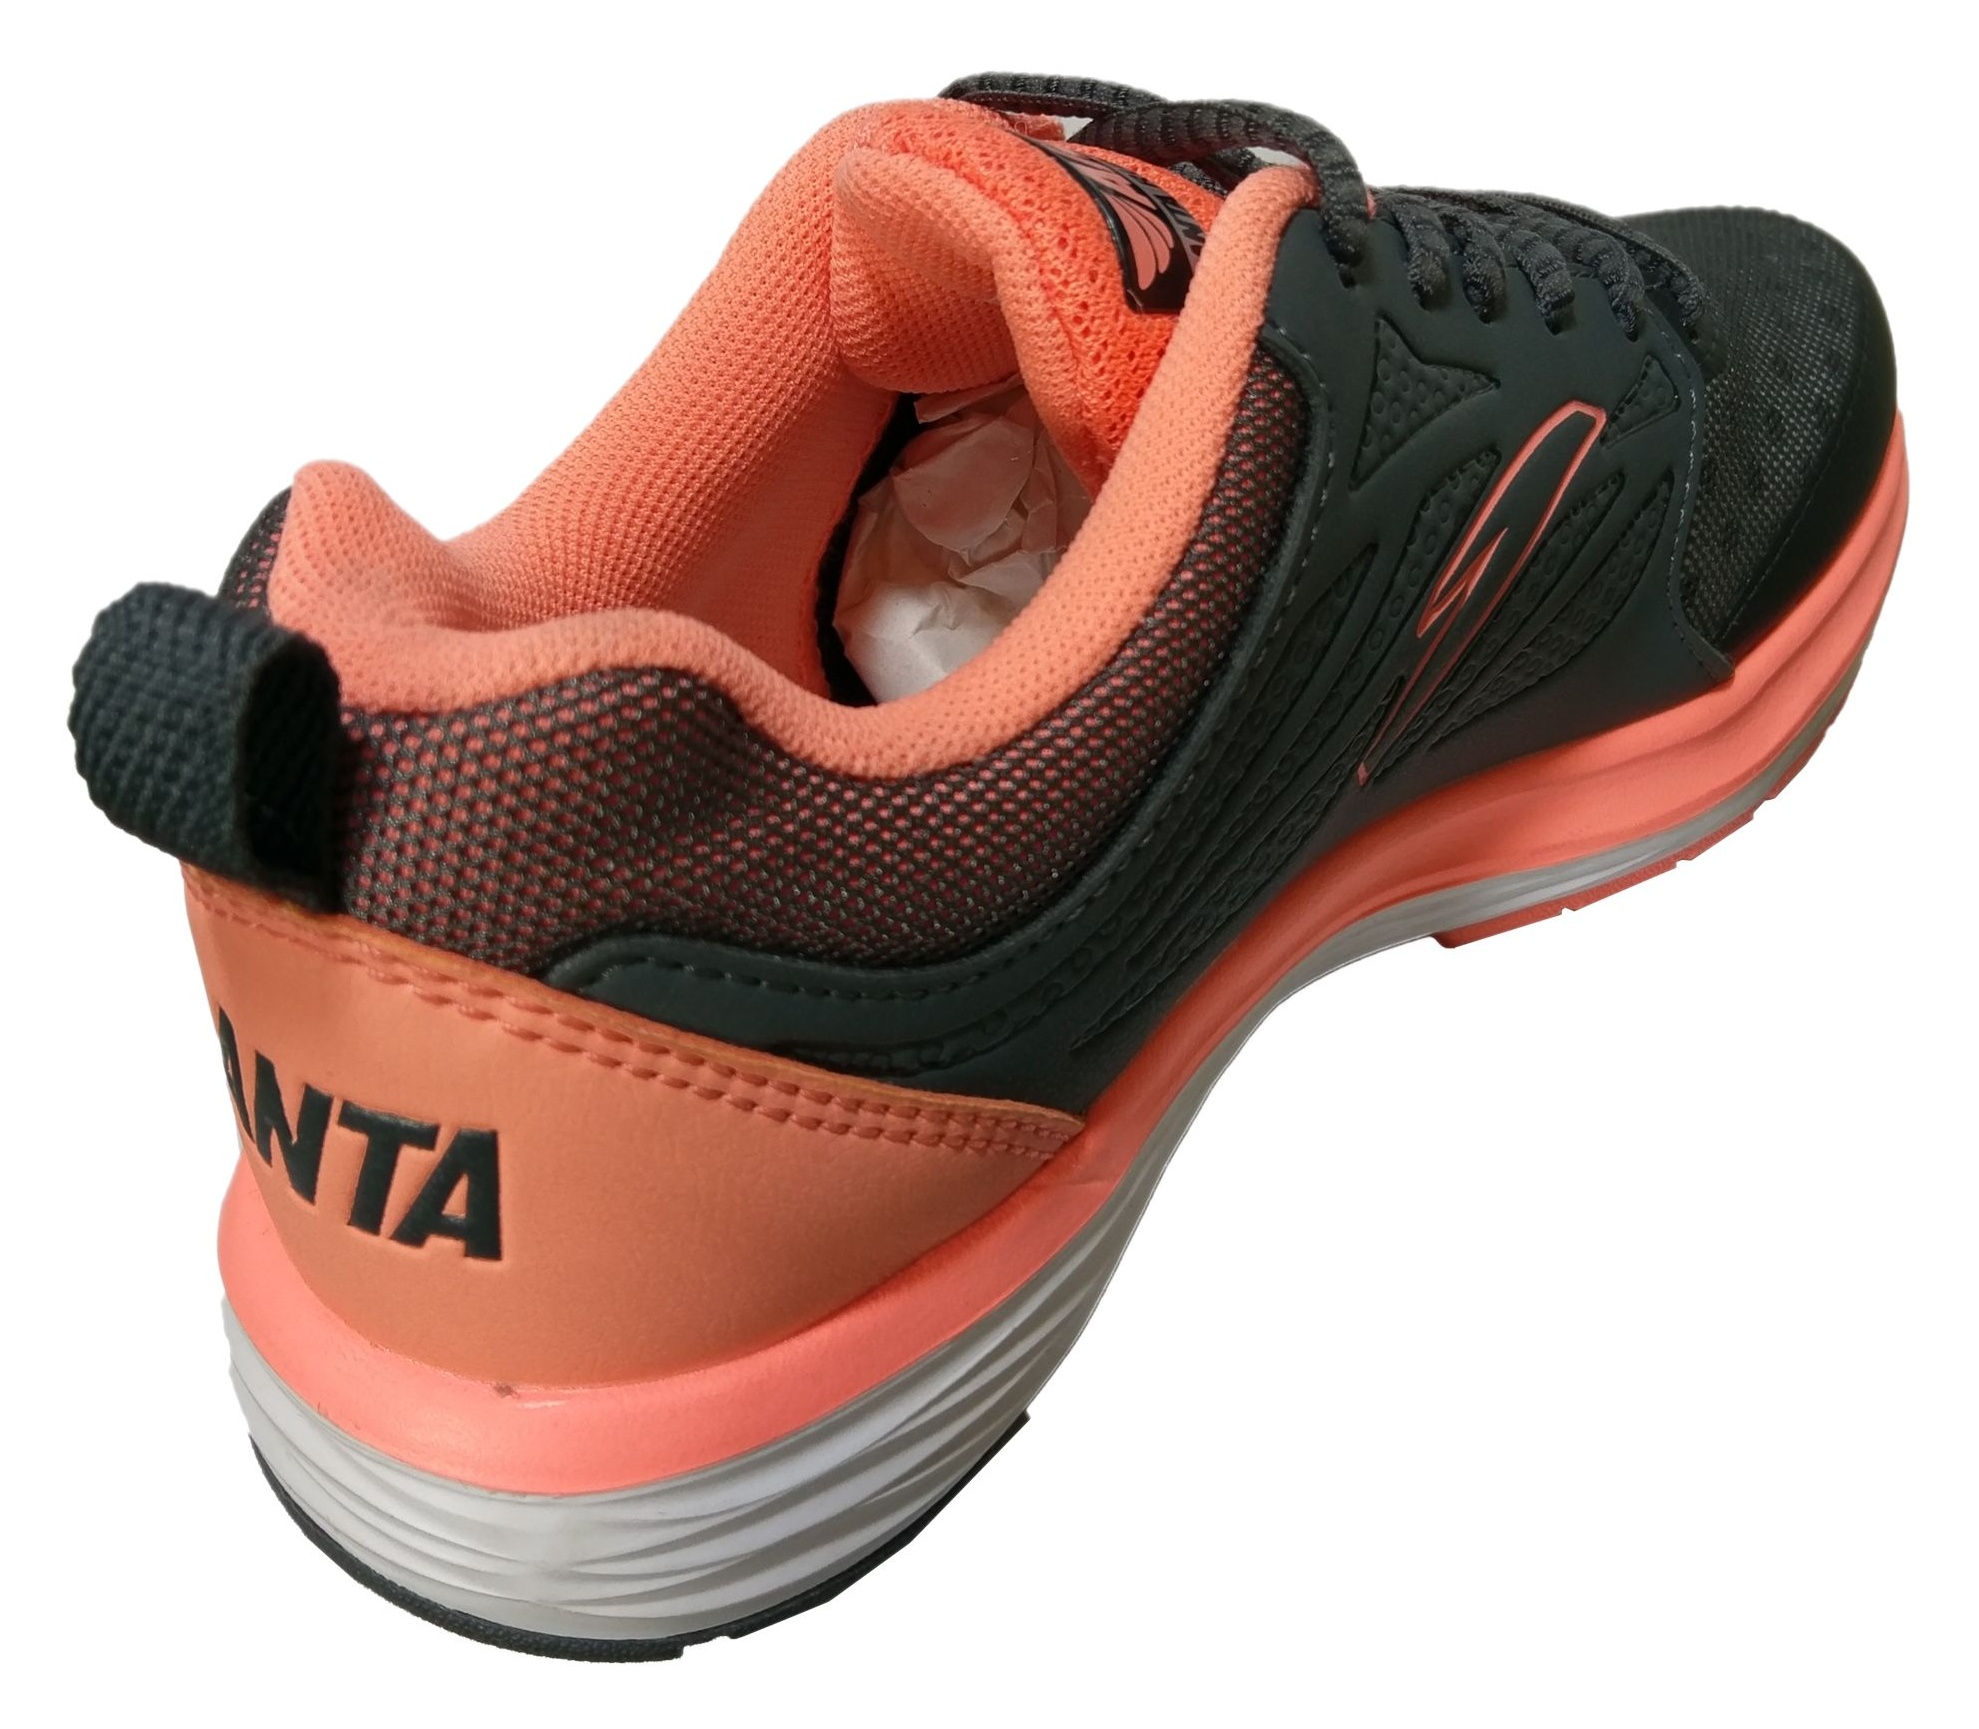 کفش مخصوص دویدن زنانه آنتا مدل 82545508-4